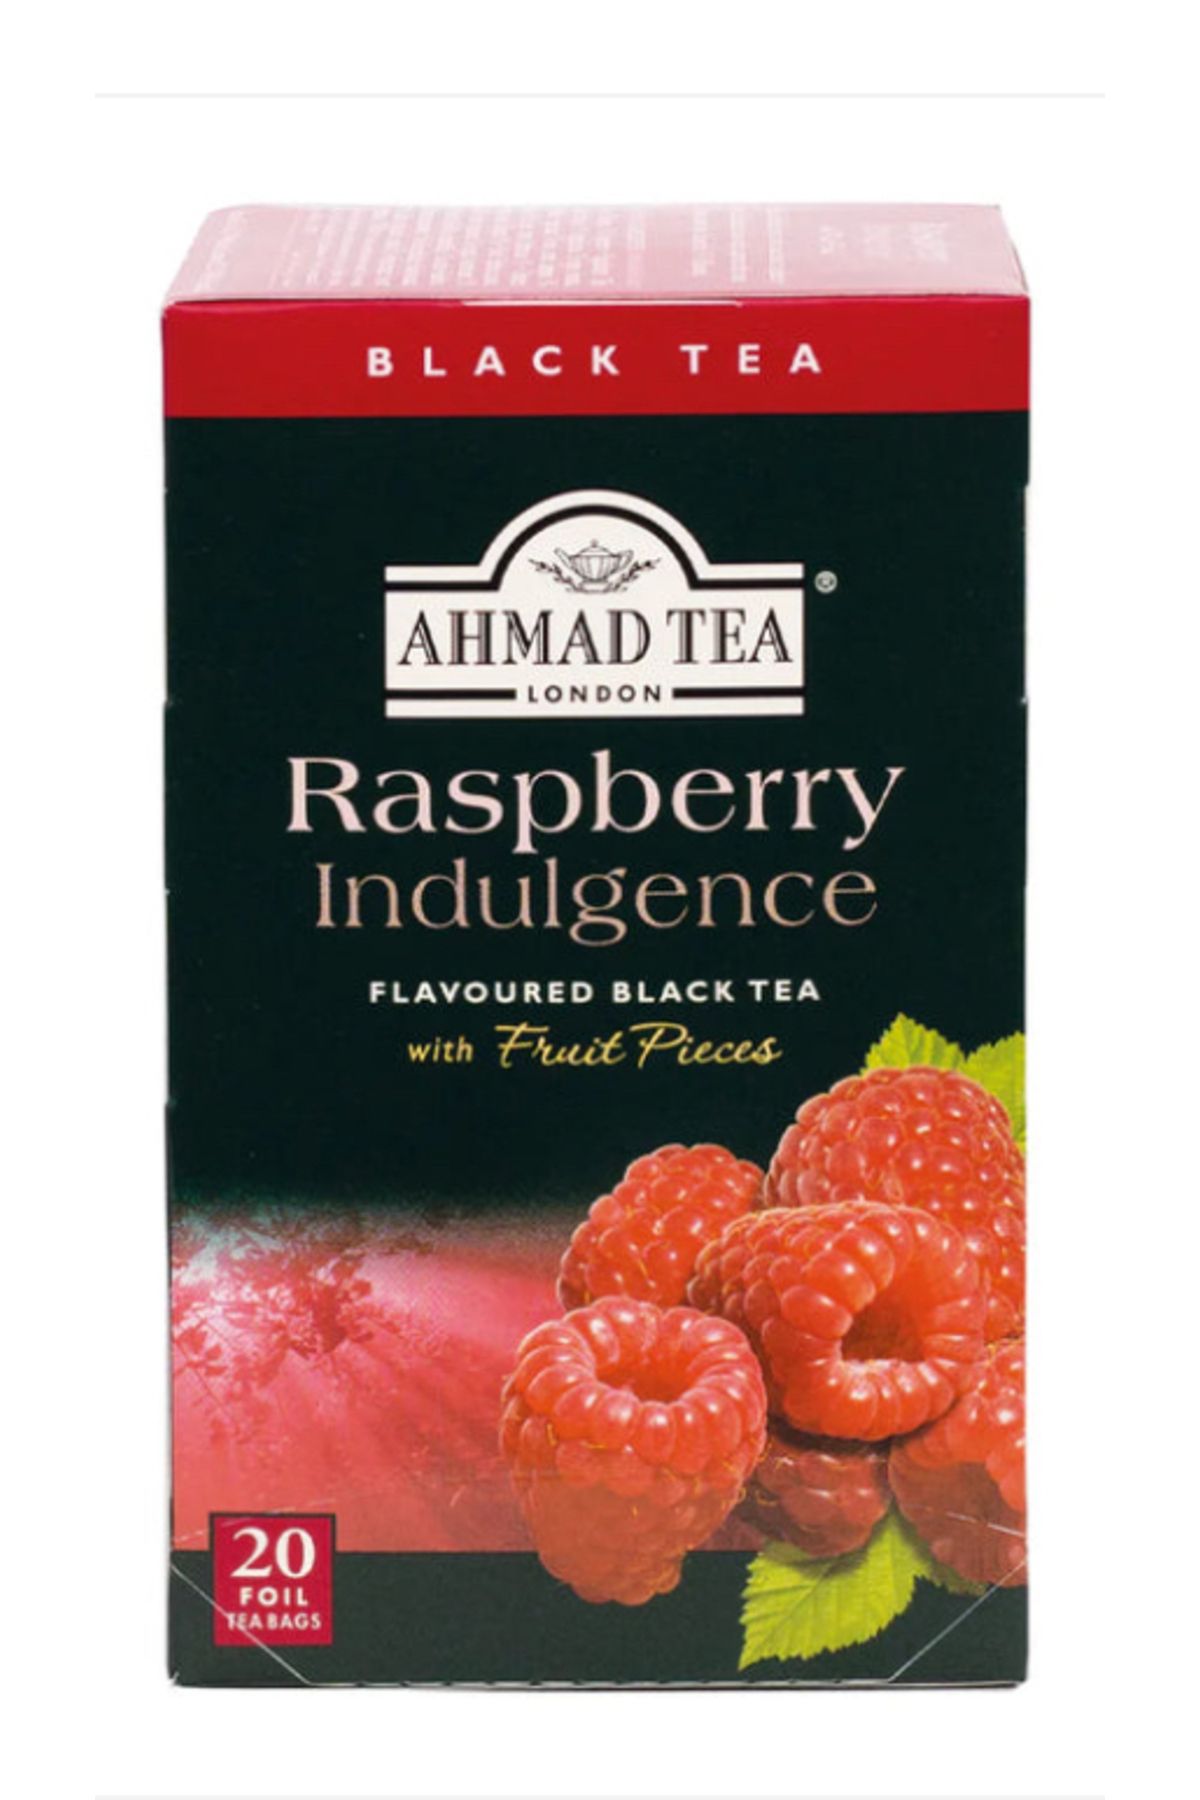 Ahmad Tea Organik ahududulu siyah Çay- Raspberry Indulgence Fruit Black Tea - 20li